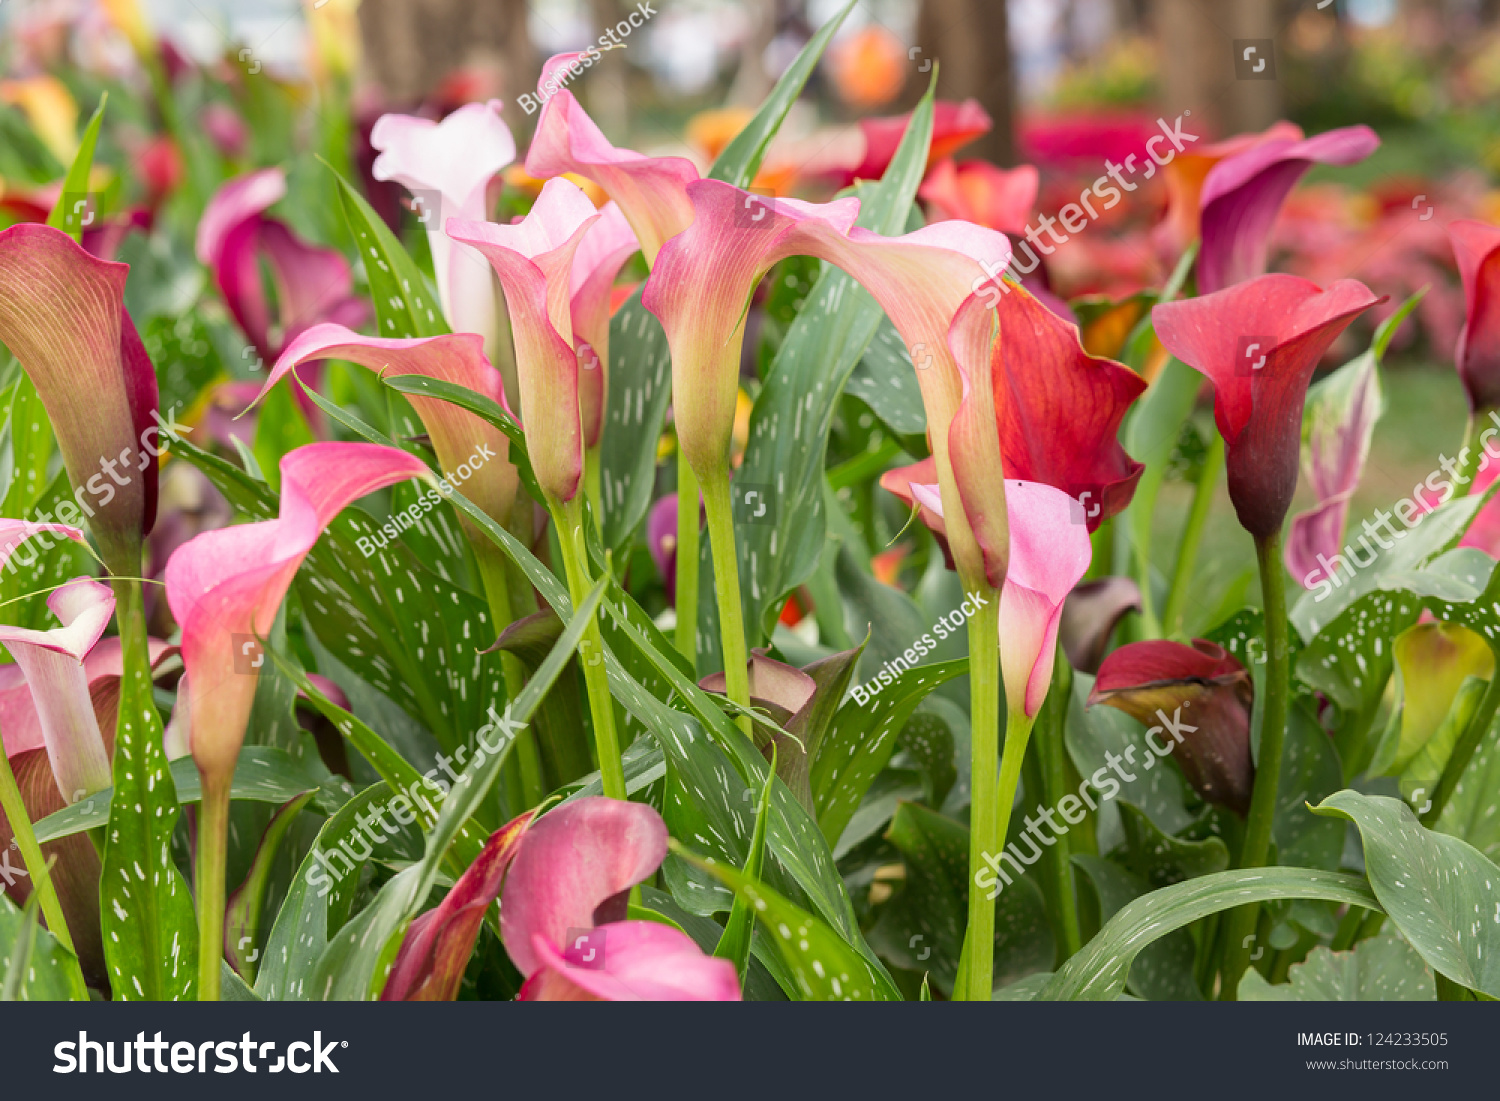 Calla Lily Field Stock Photo 124233505 : Shutterstock